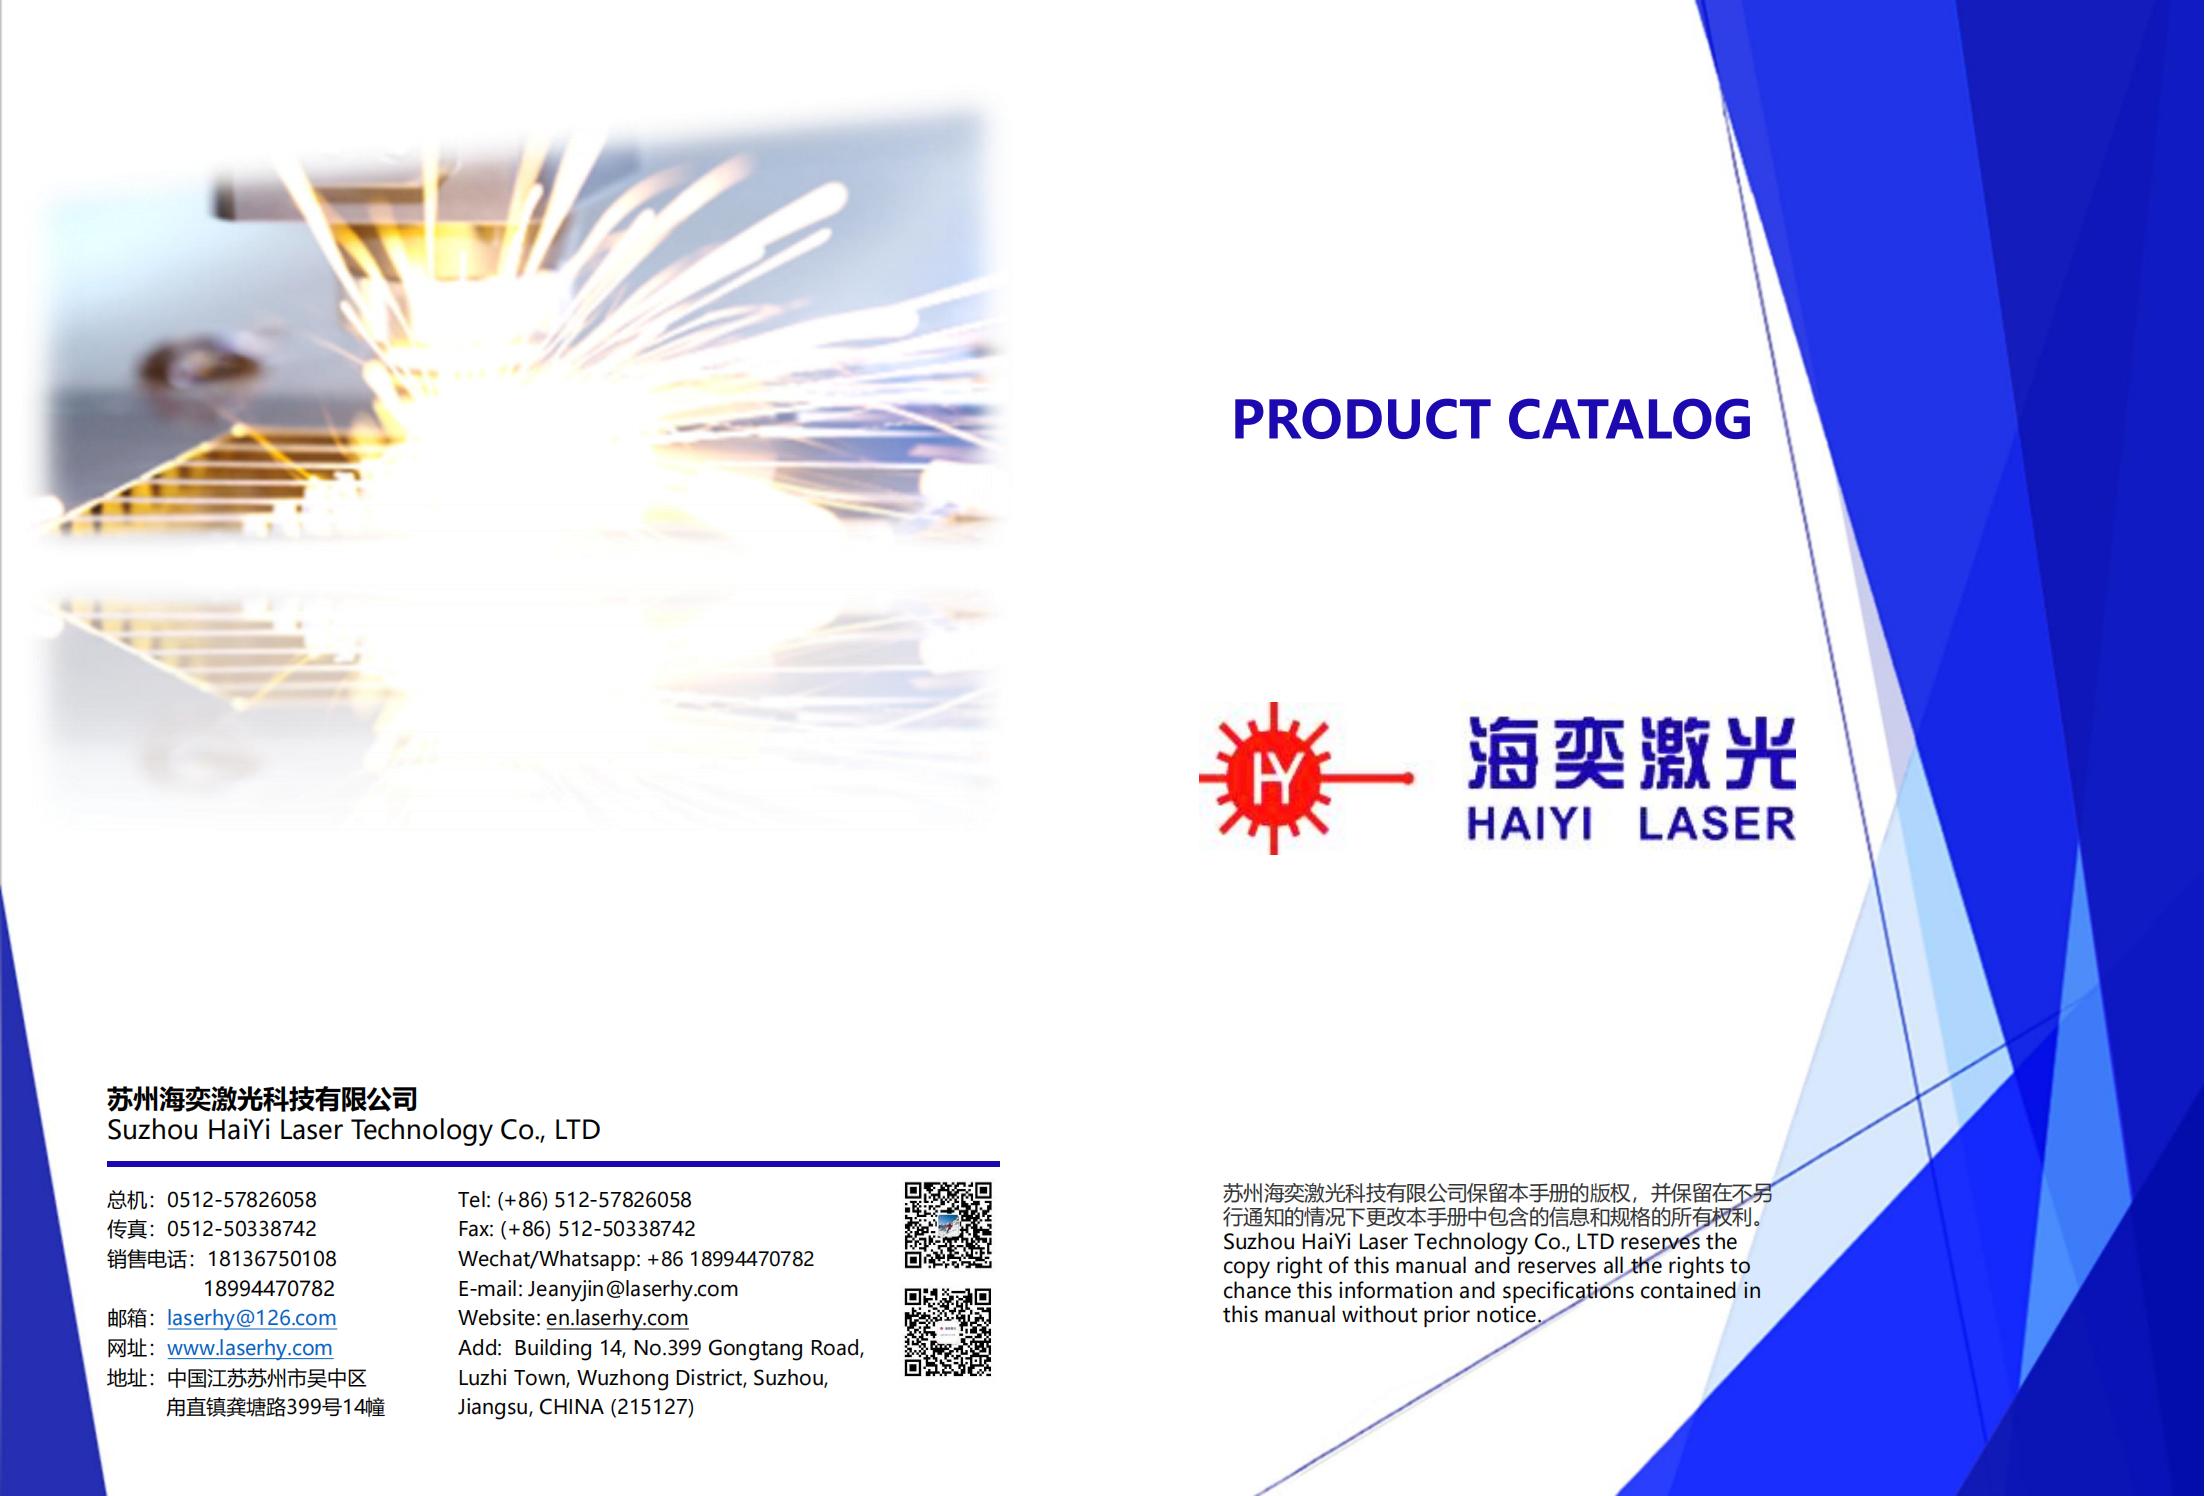 Product Catalog - HaiYi Laser